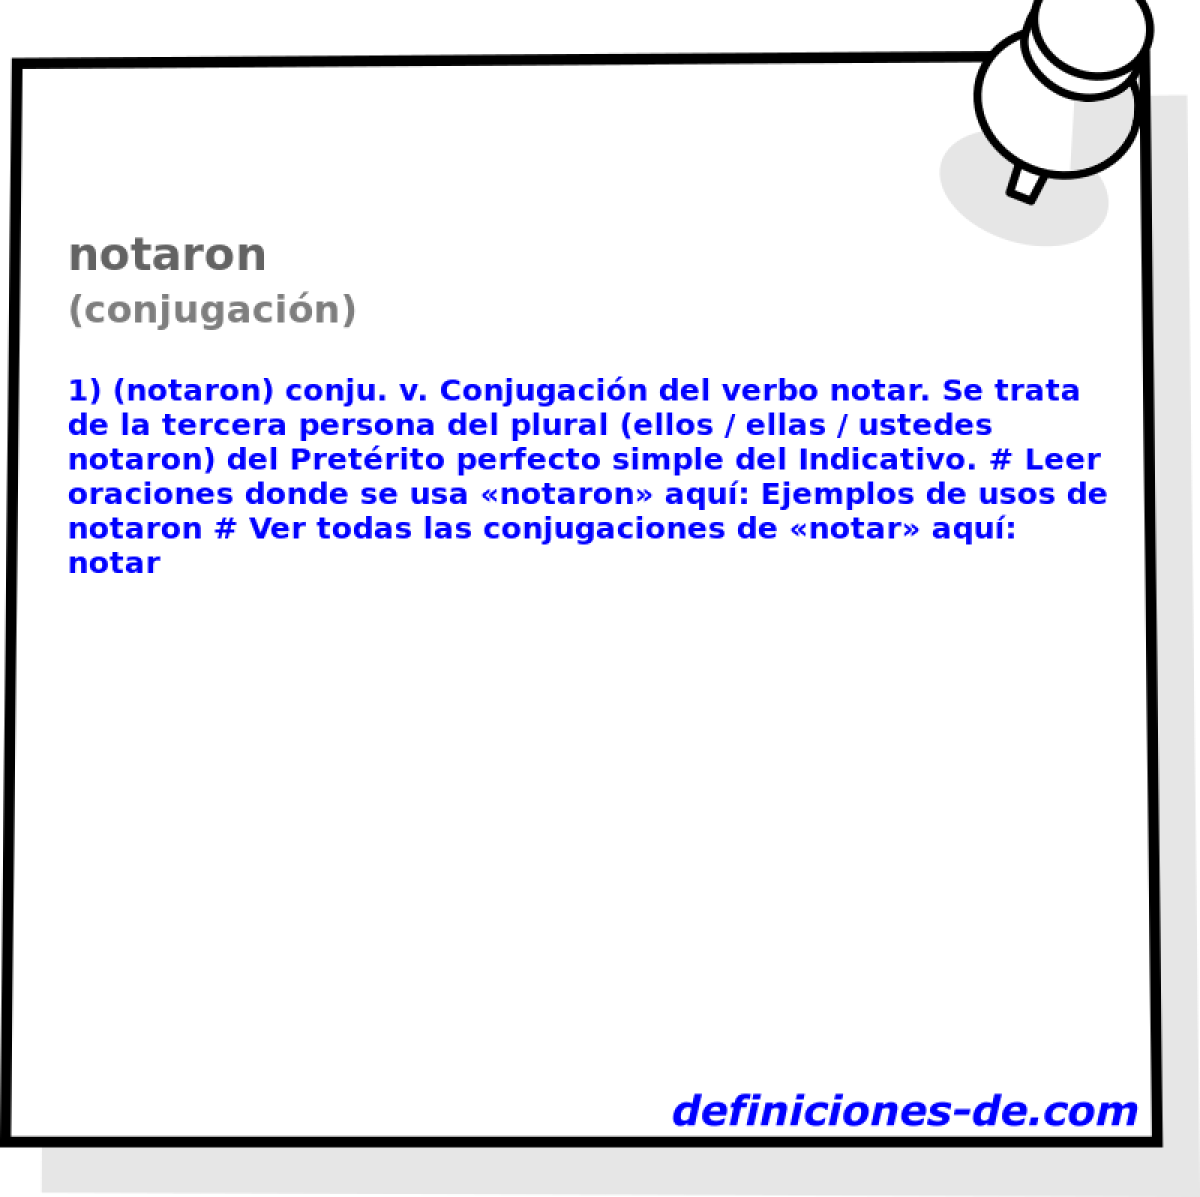 notaron (conjugacin)